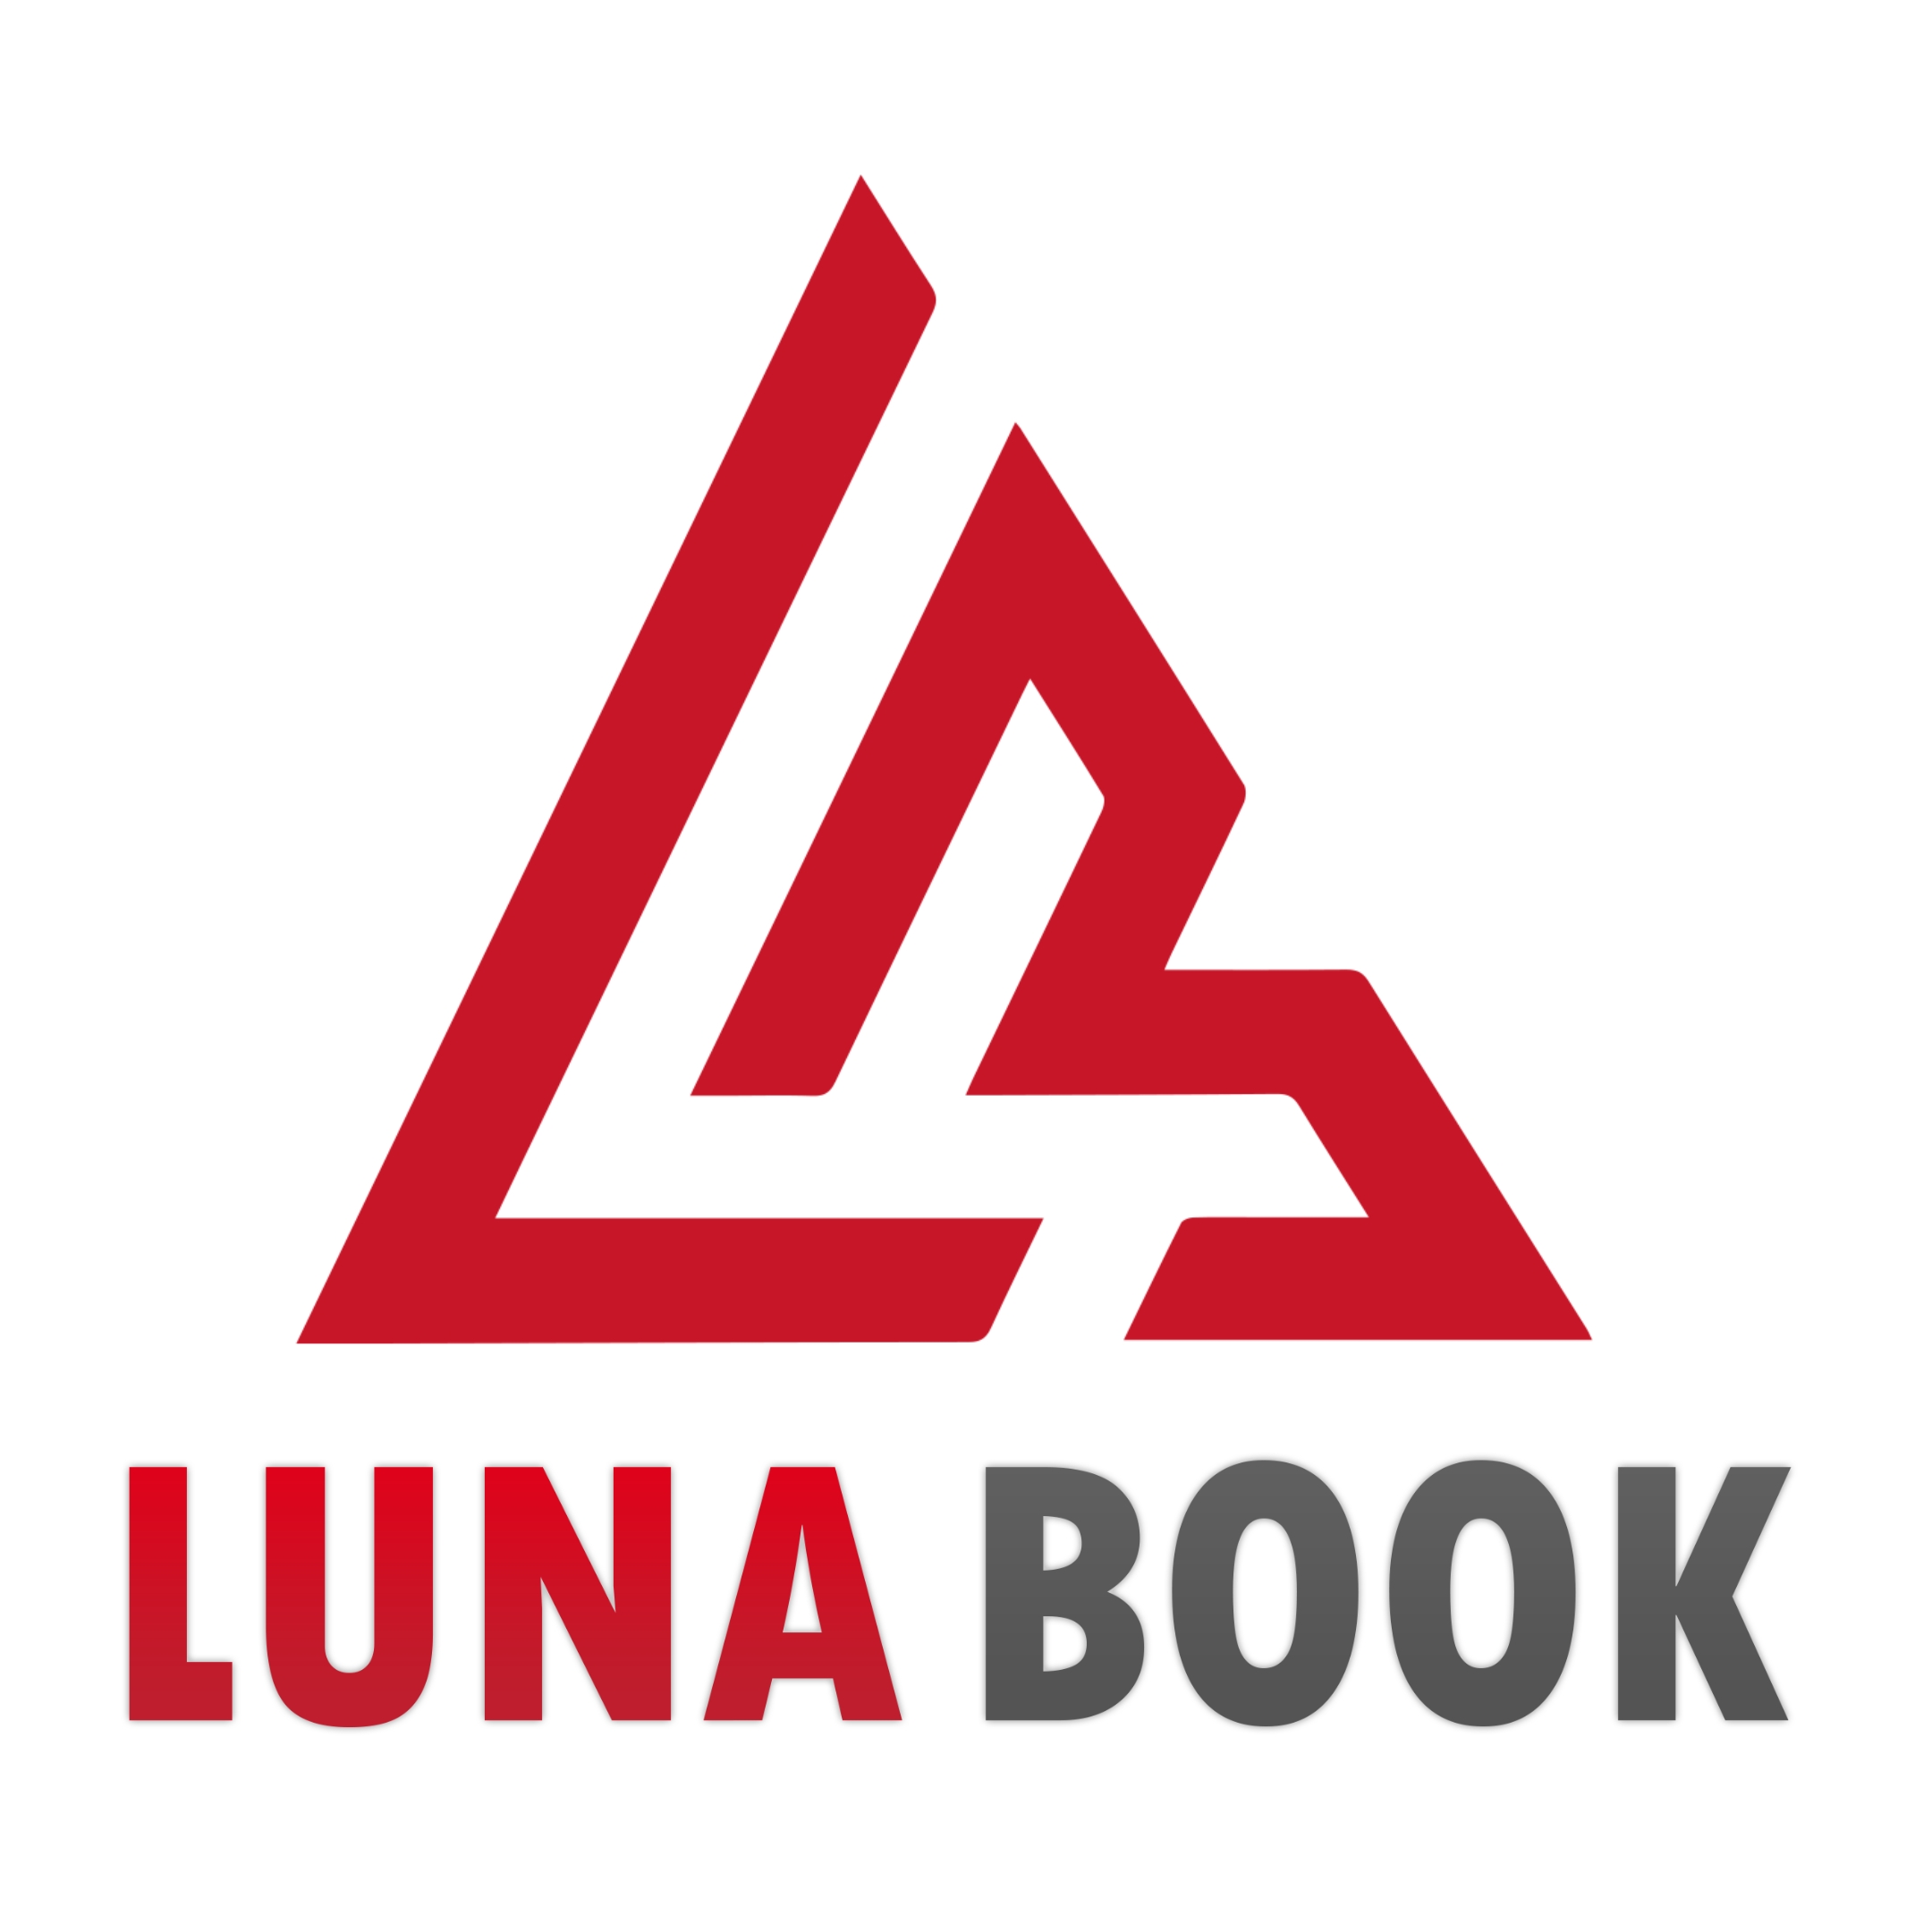 LunaBook